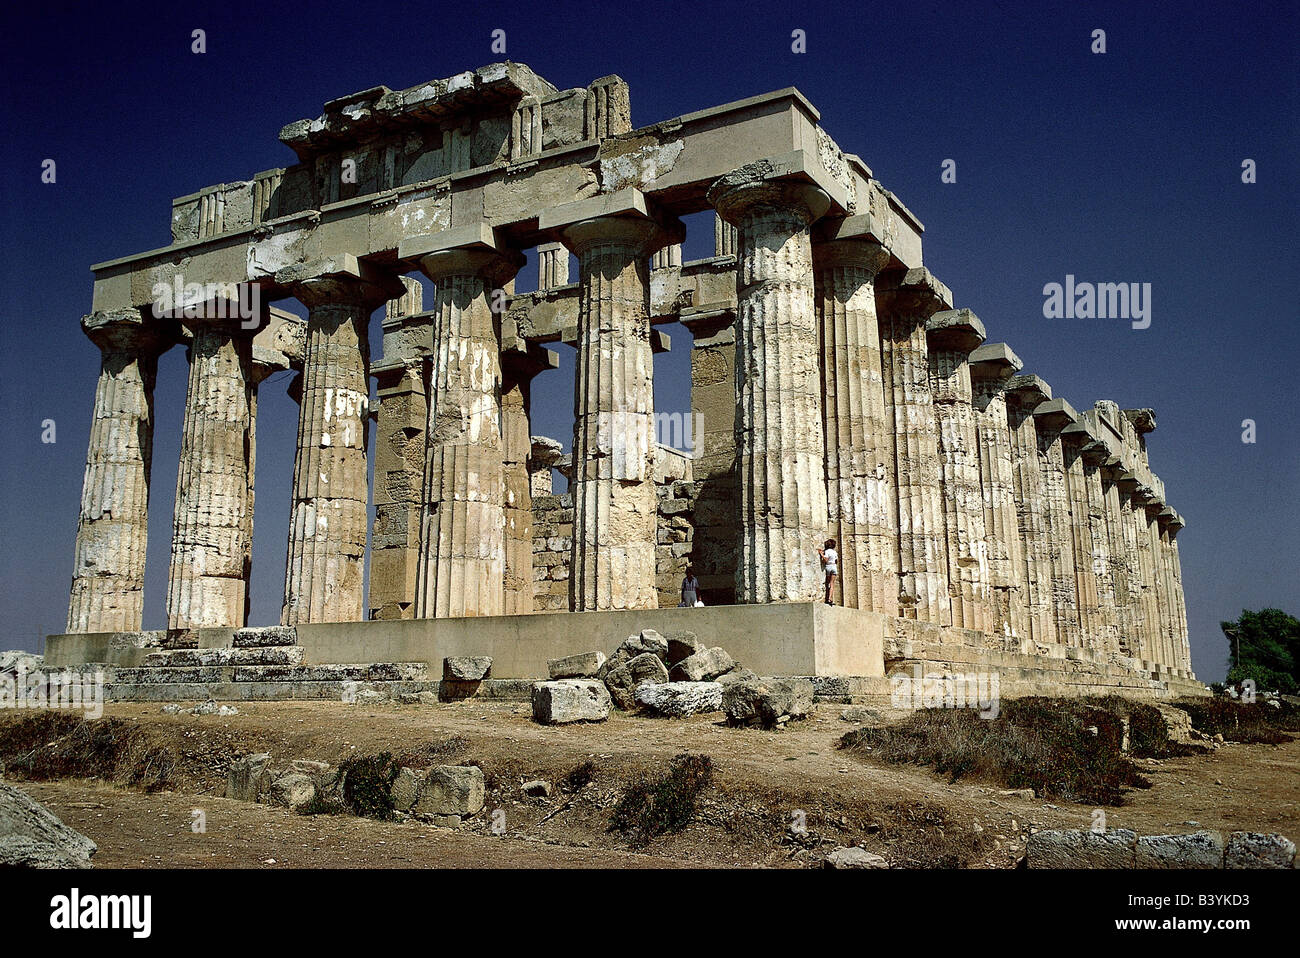 Geographie/Reise, Italien, Sizilien, Selinunte (Selinus), griechische Kolonie, gegründet 7. V. Chr., zerstört 250 v. Chr., Ruine, Tempel, erbaut 465 - 450, Stockfoto